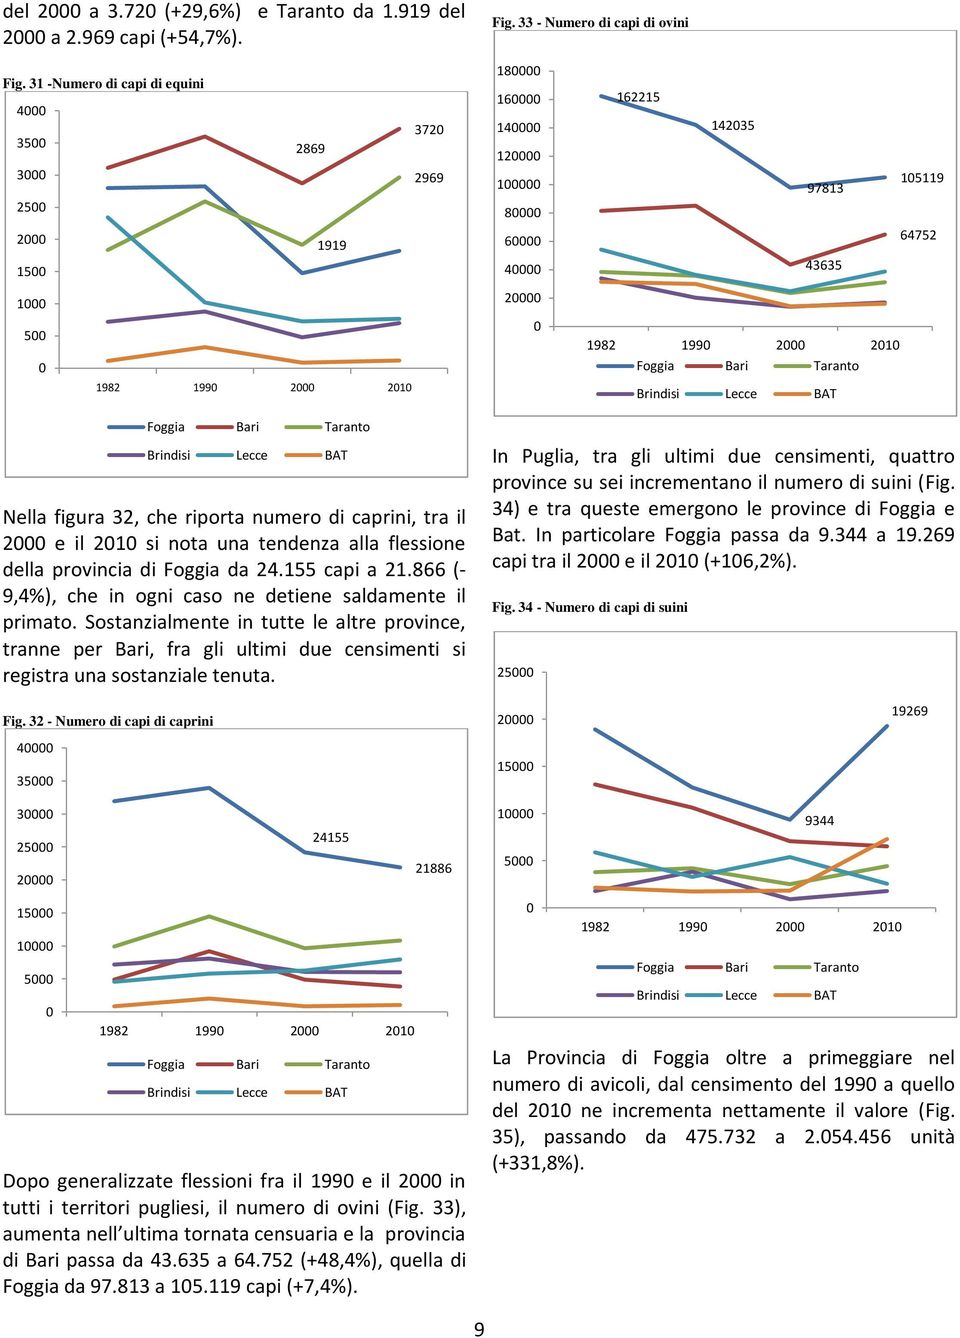 una tendenza alla flessione della provincia di Foggia da 24.155 capi a 21.866 (- 9,4%), che in ogni caso ne detiene saldamente il primato.